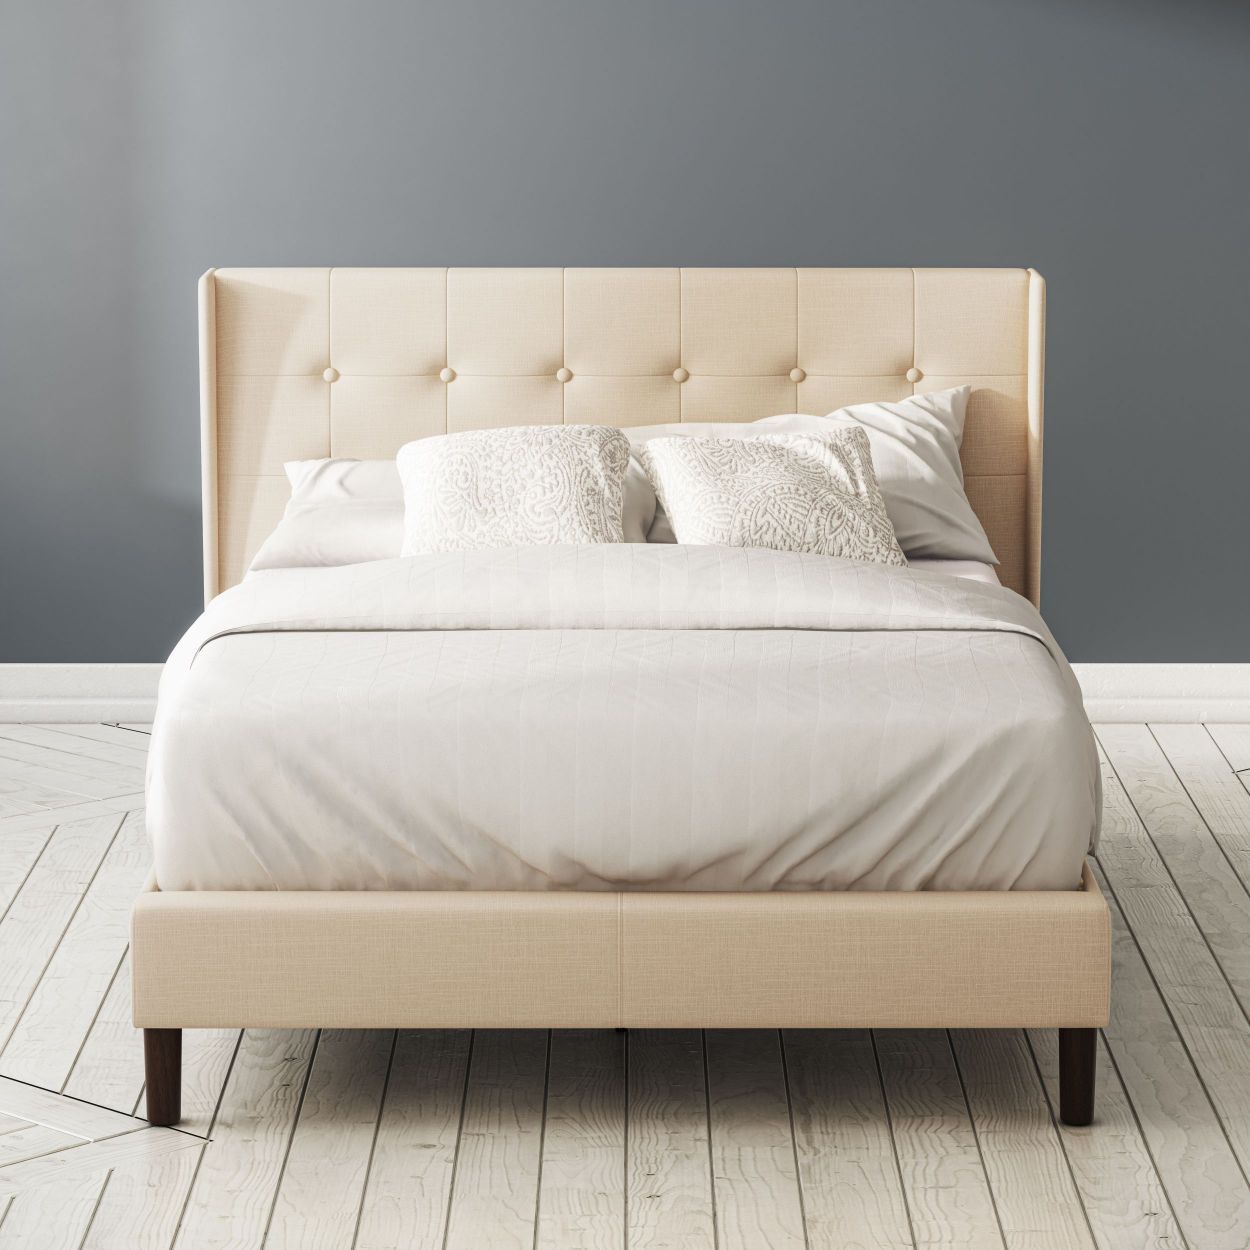 Athena Upholstered Platform Bed Frame, Platform Bed Frame Zinus